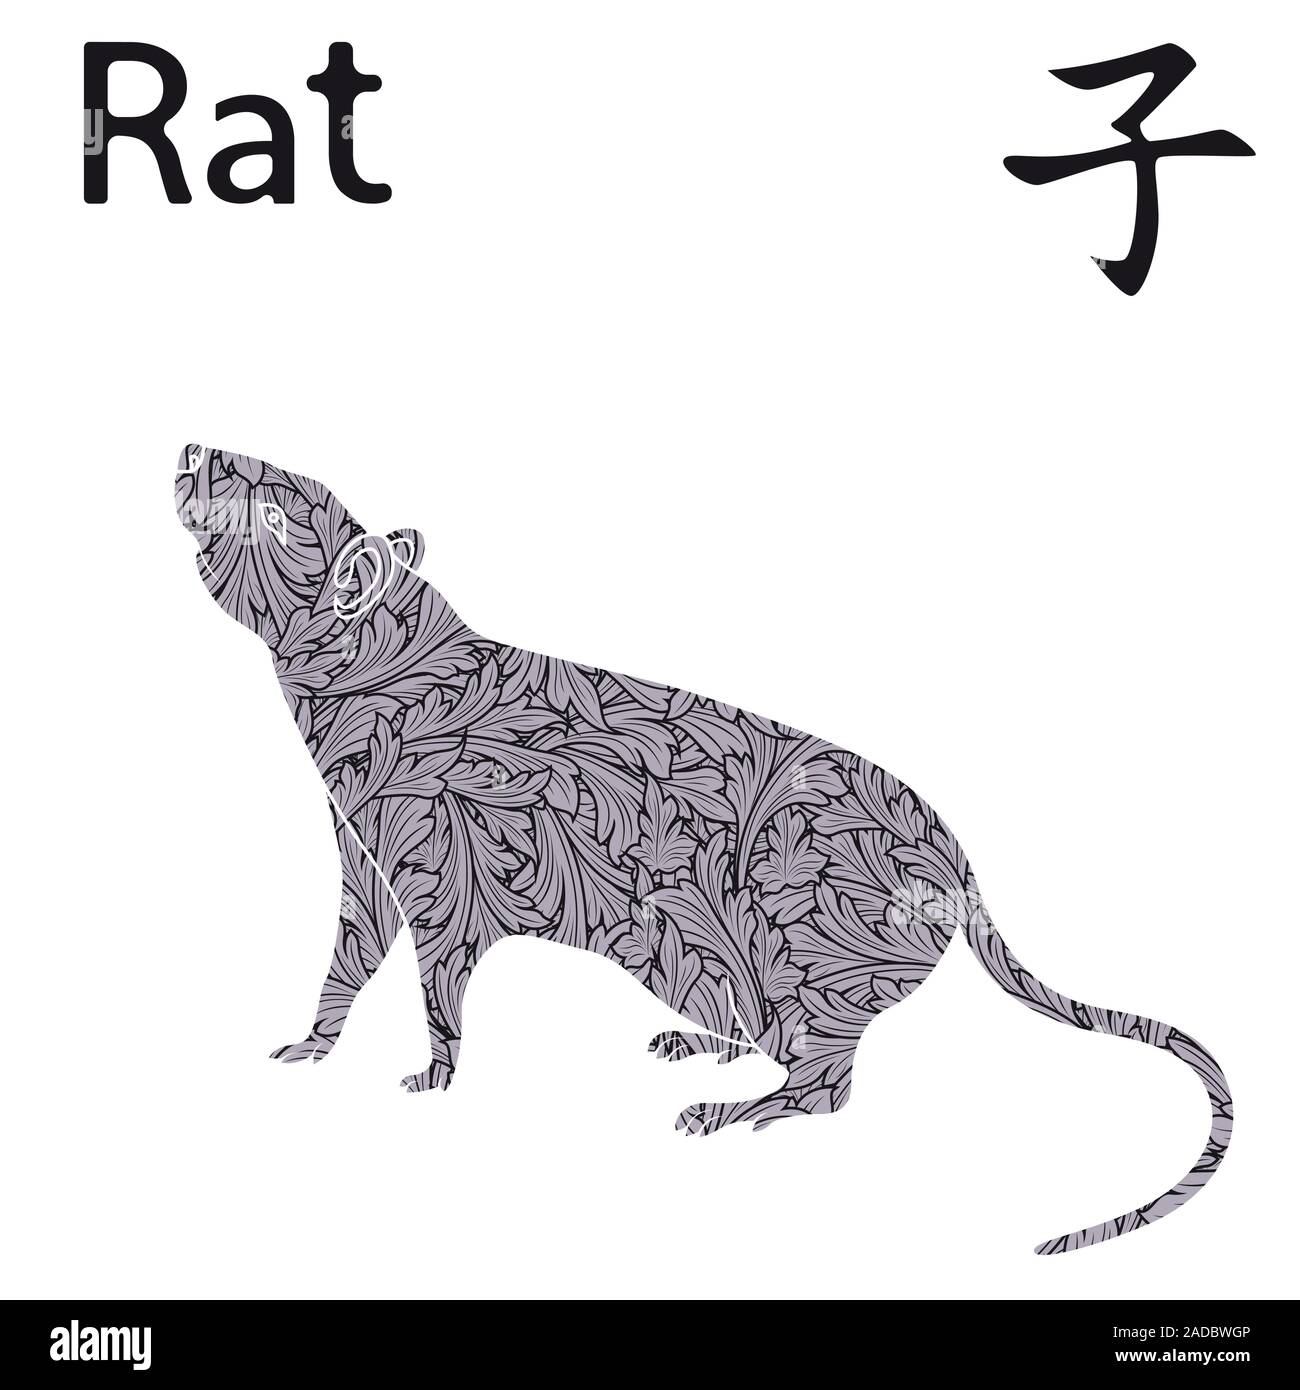 Signe zodiacal chinois Rat, élément fixe l'eau, symbole de la nouvelle année sur le calendrier oriental, hand drawn vector avec pochoir feuilles isolées sur monochrome Illustration de Vecteur